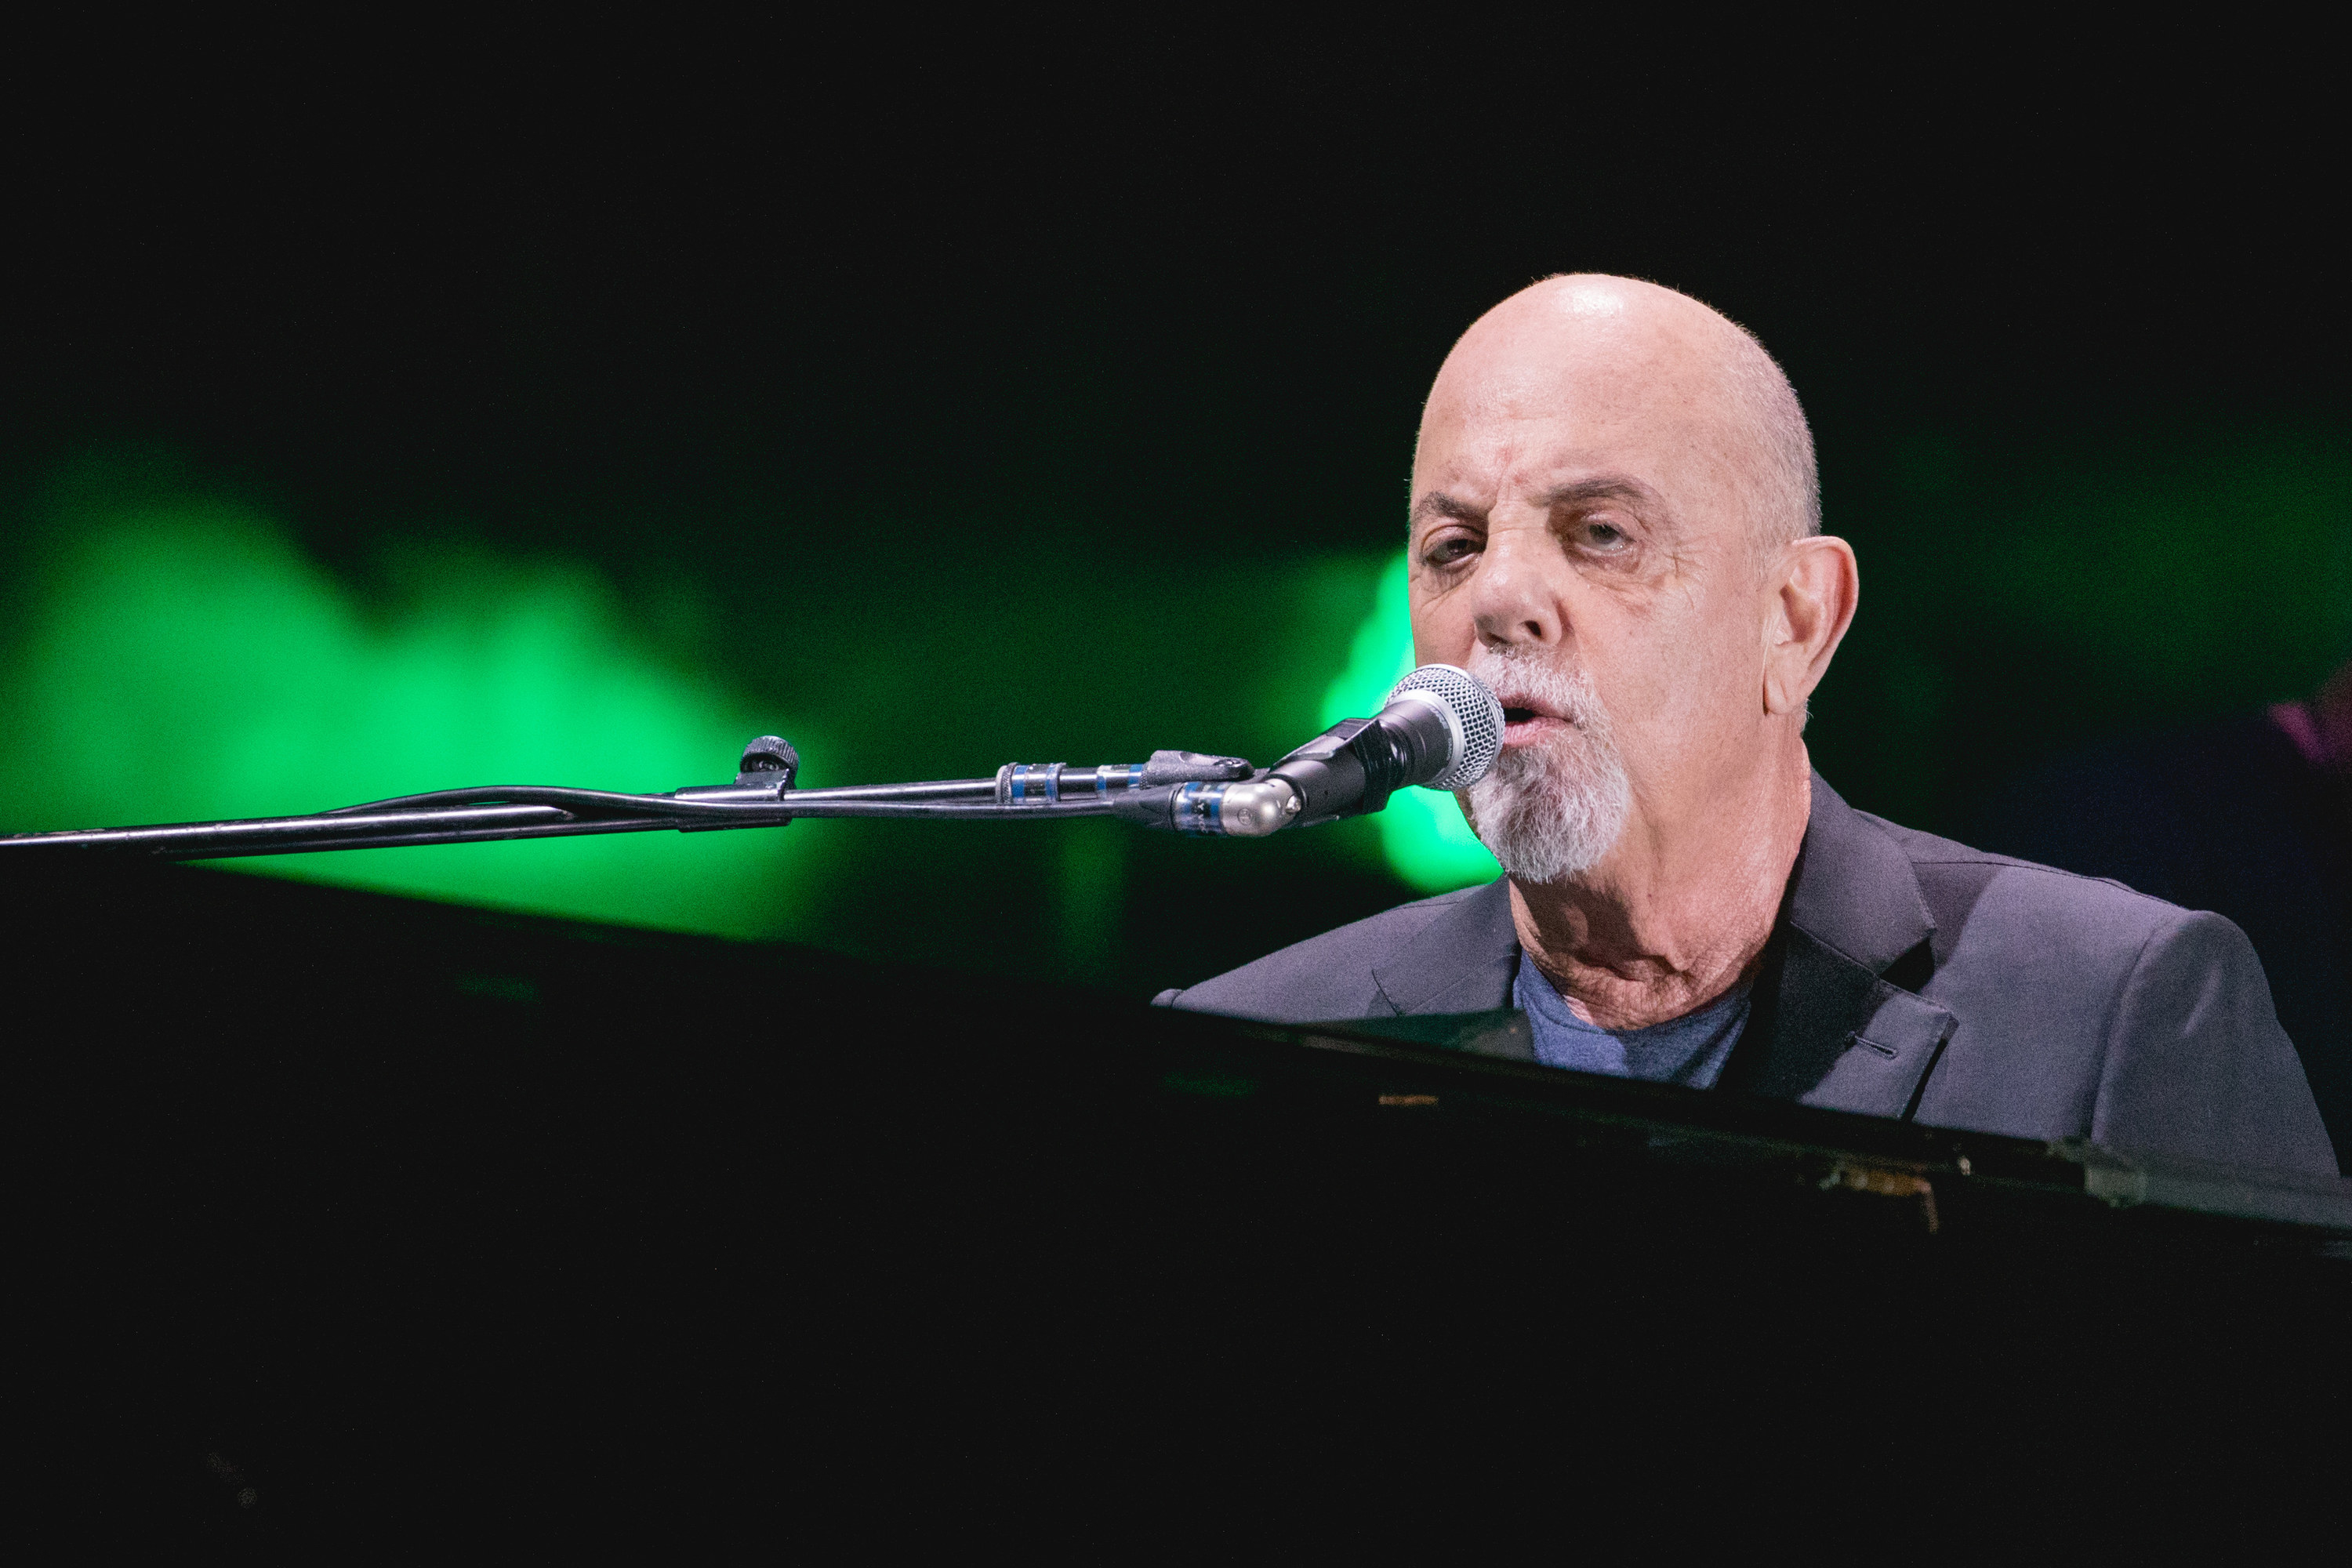 Billy Joel performing on stage